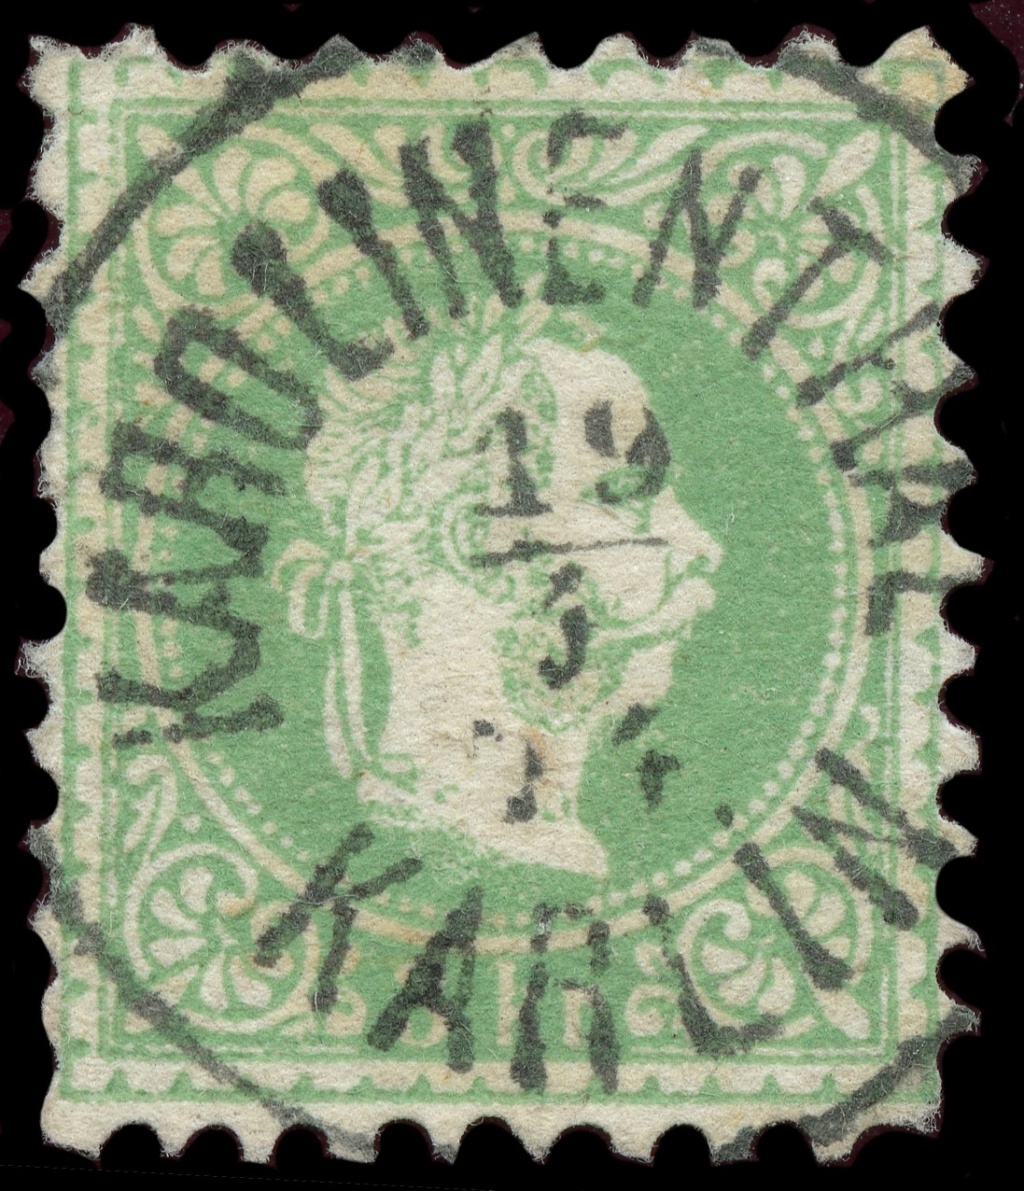 stempel - Freimarken-Ausgabe 1867 : Kopfbildnis Kaiser Franz Joseph I - Seite 23 Ank_3628